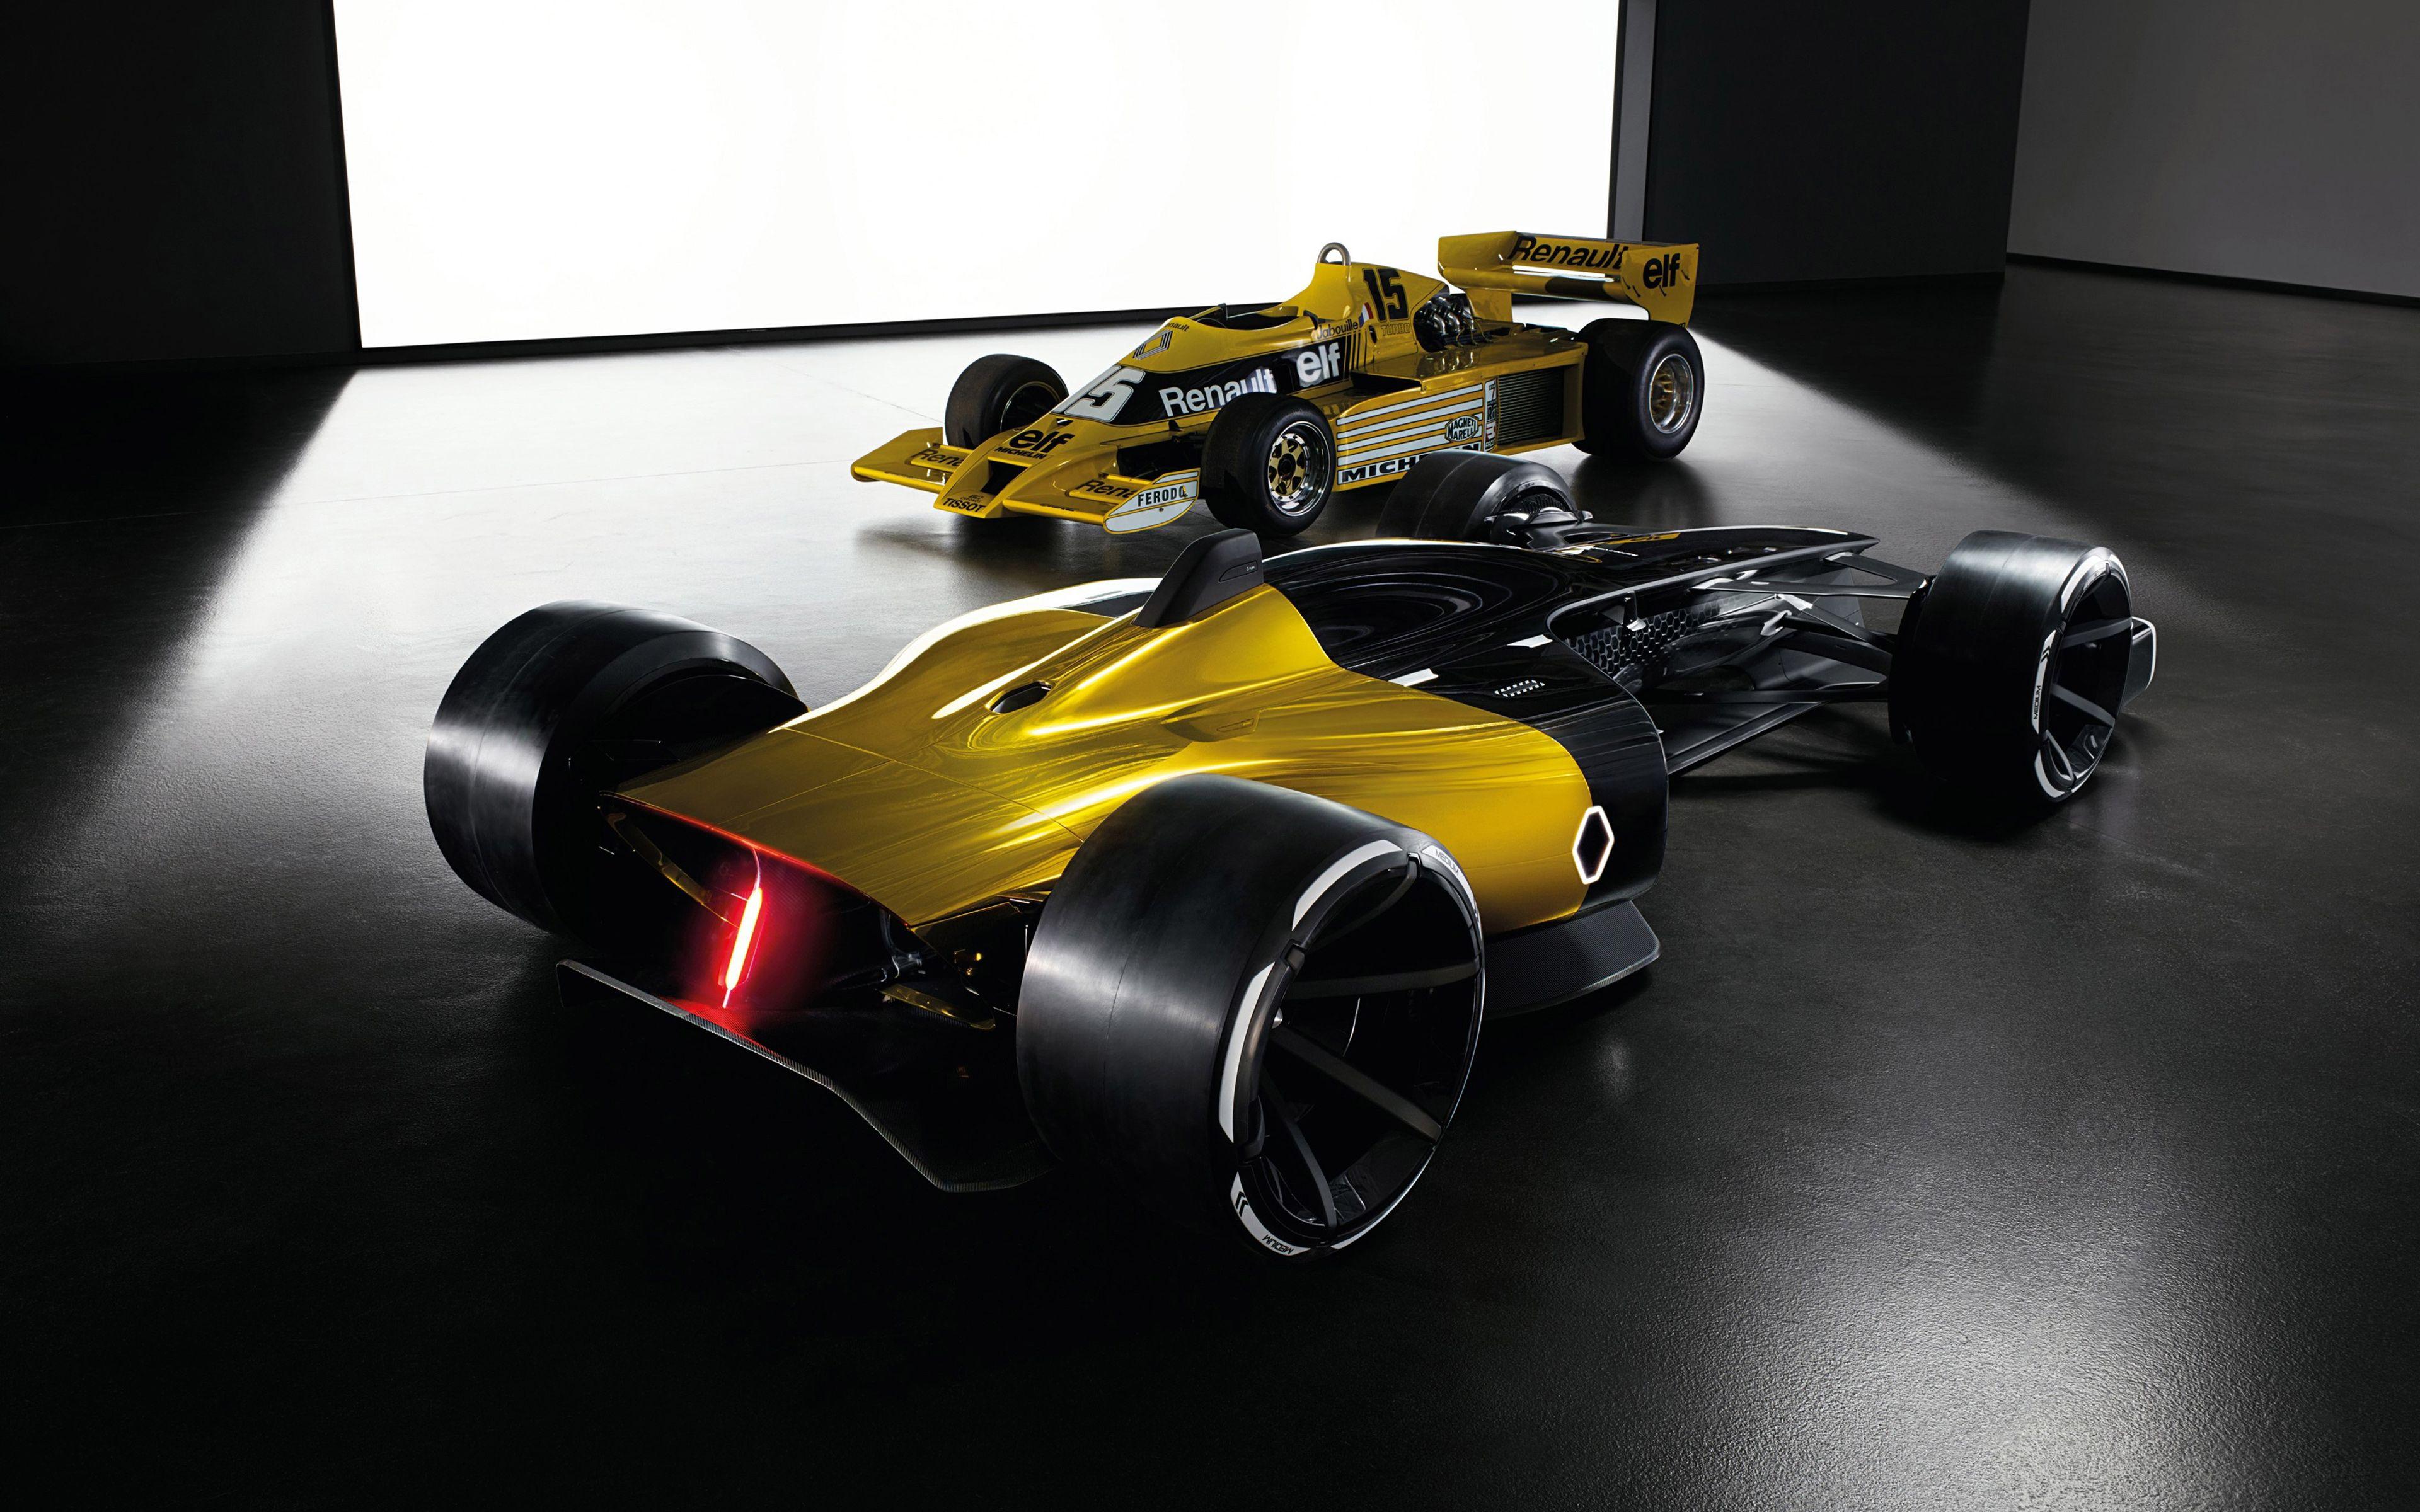 Renault RS 2027 Vision Concept F1 Car 4K Wallpaper. HD Wallpaper